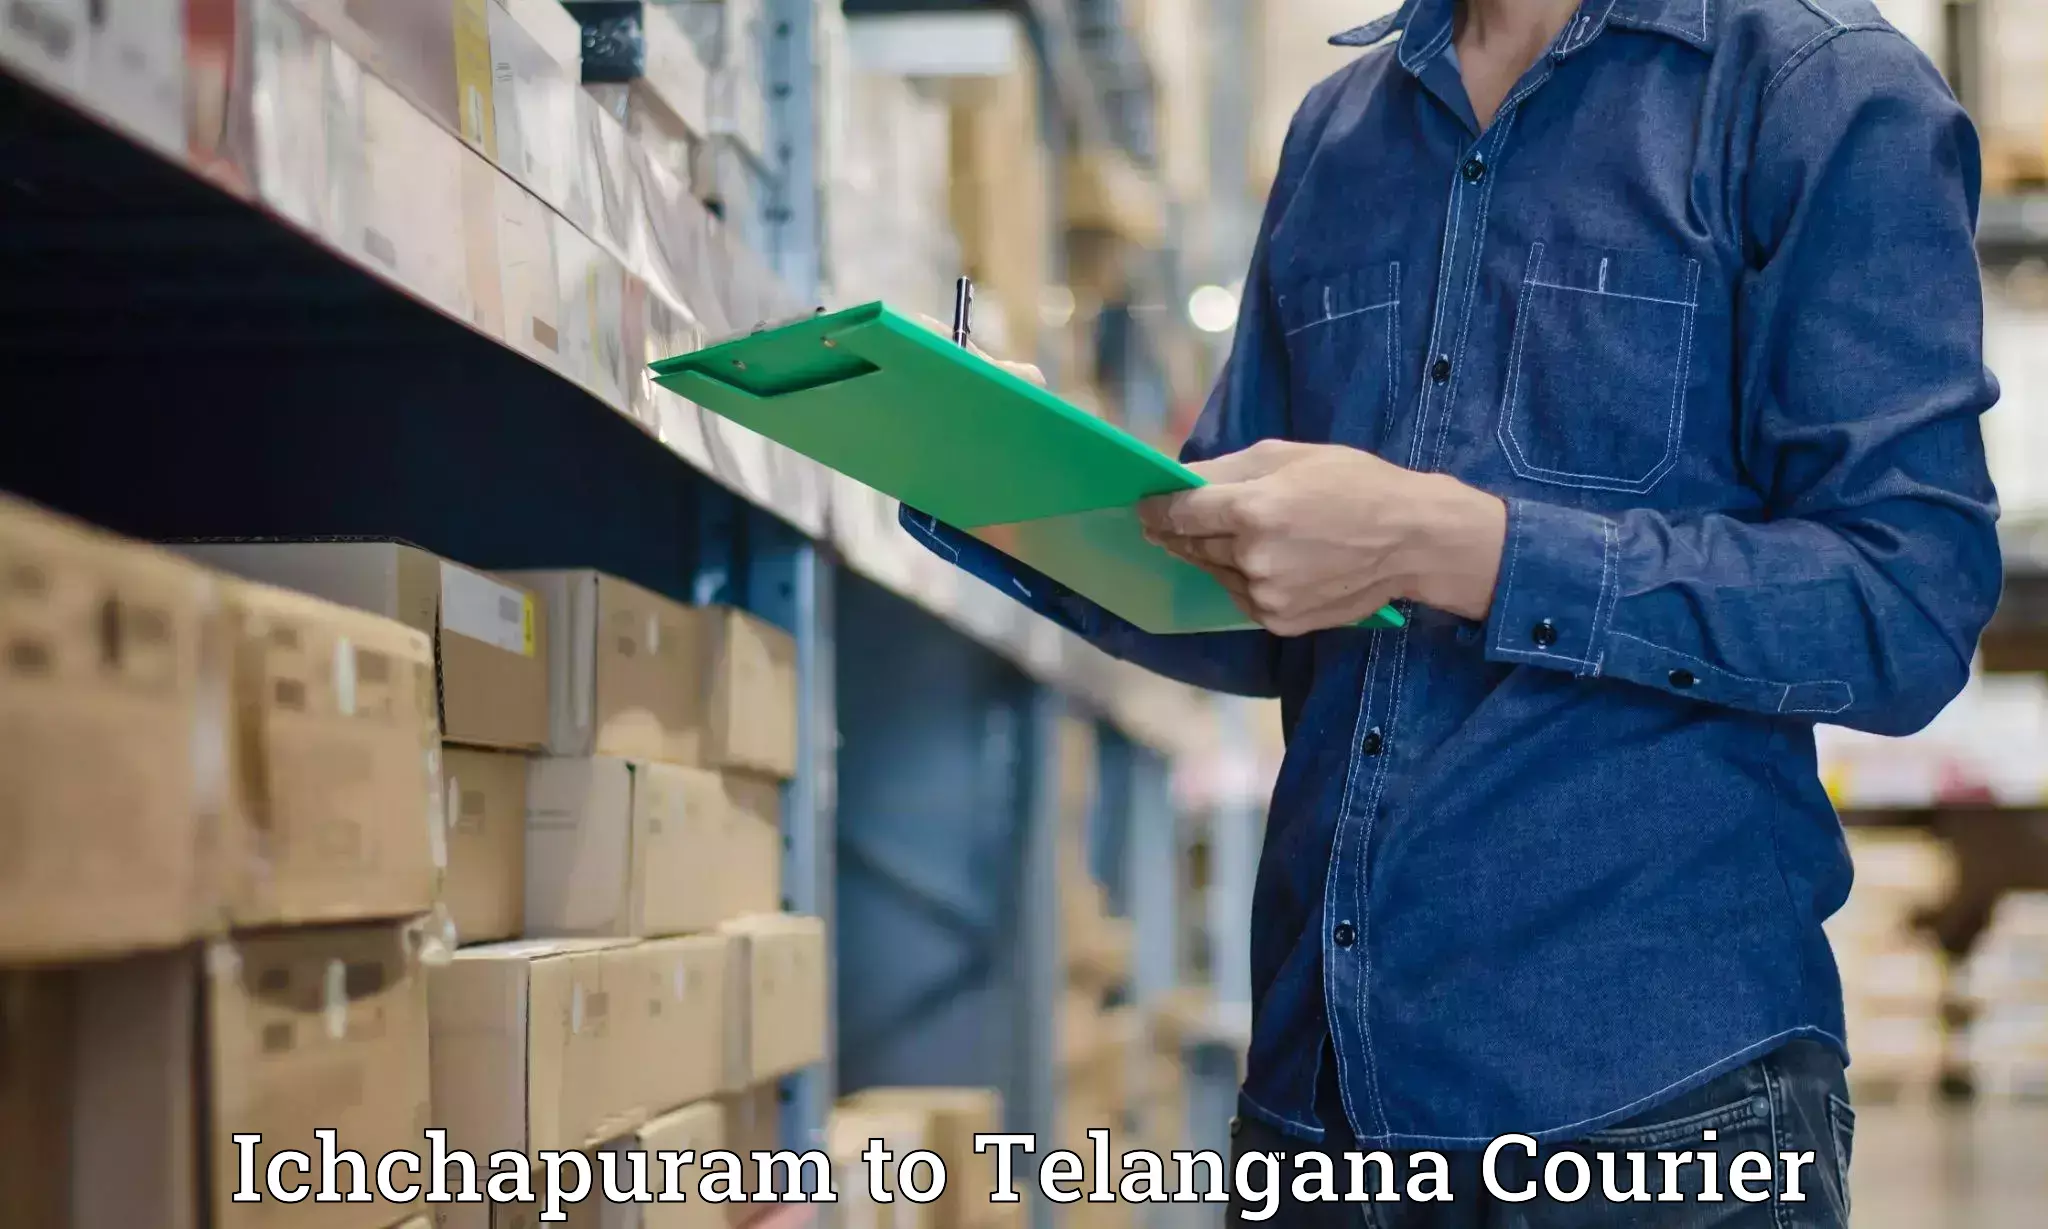 Digital courier platforms Ichchapuram to Mothkur